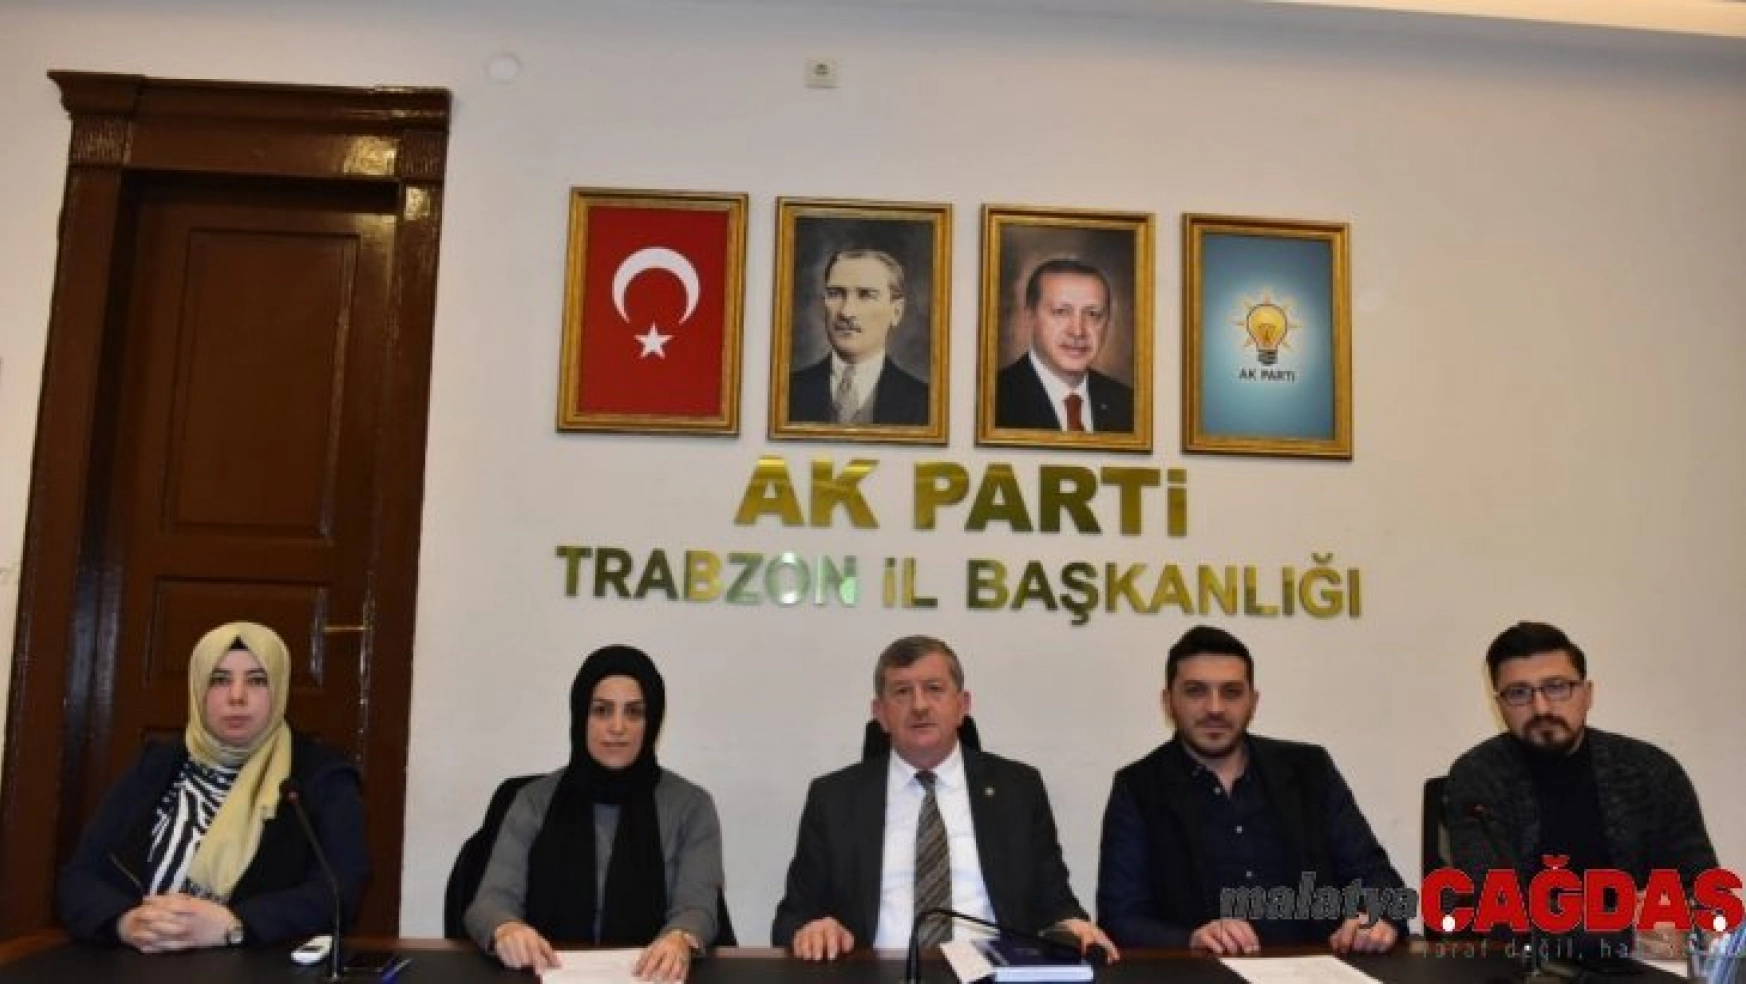 AK Parti Trabzon'da 19. dönem siyaset akademisi başlıyor